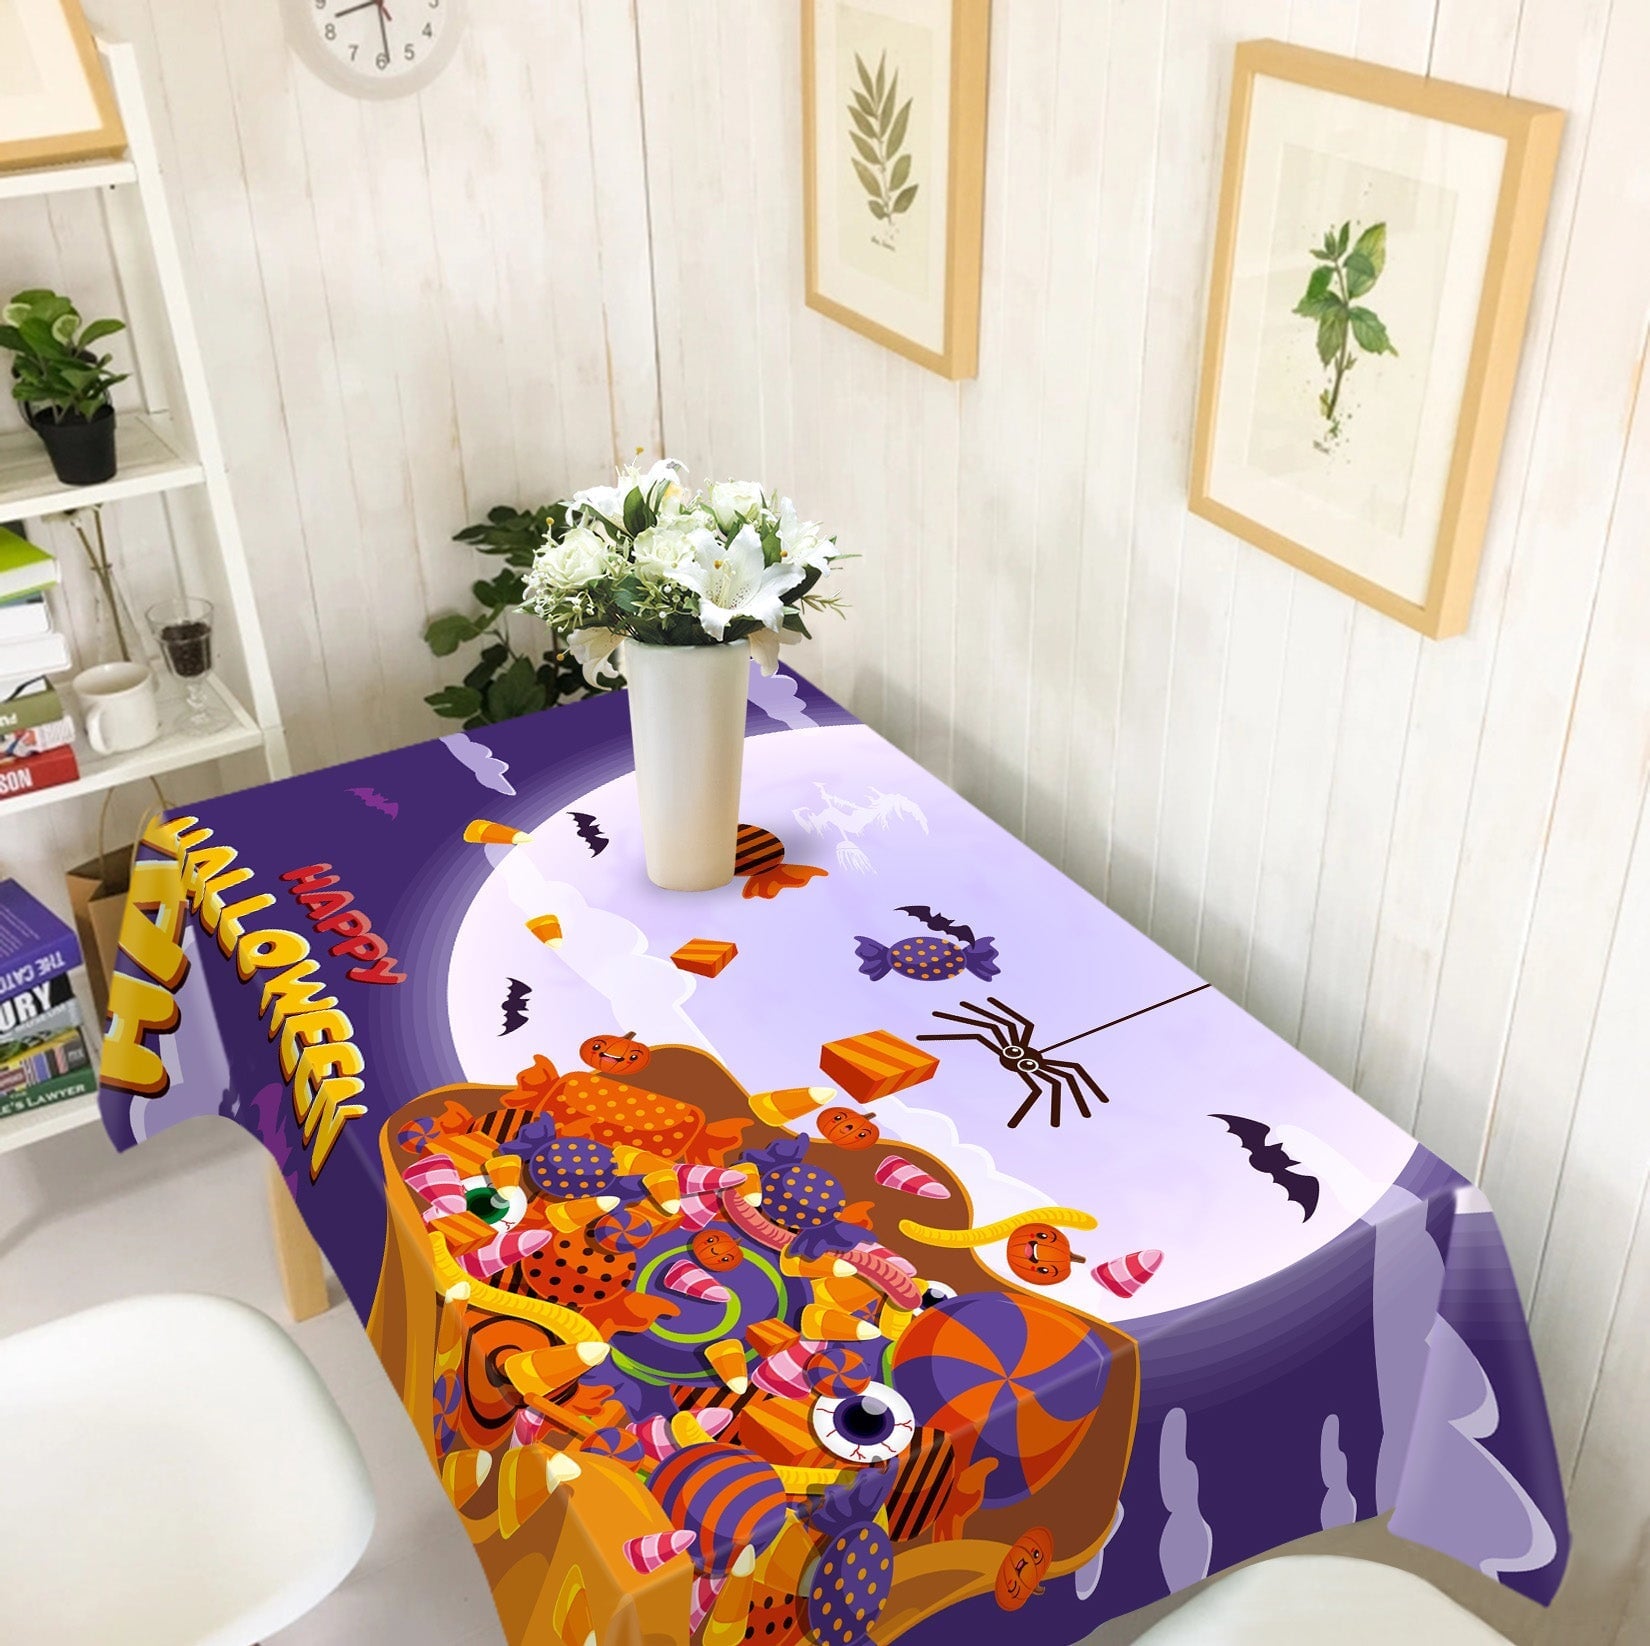 3D Moon Candy Spider 049 Halloween Tablecloths Wallpaper AJ Wallpaper 